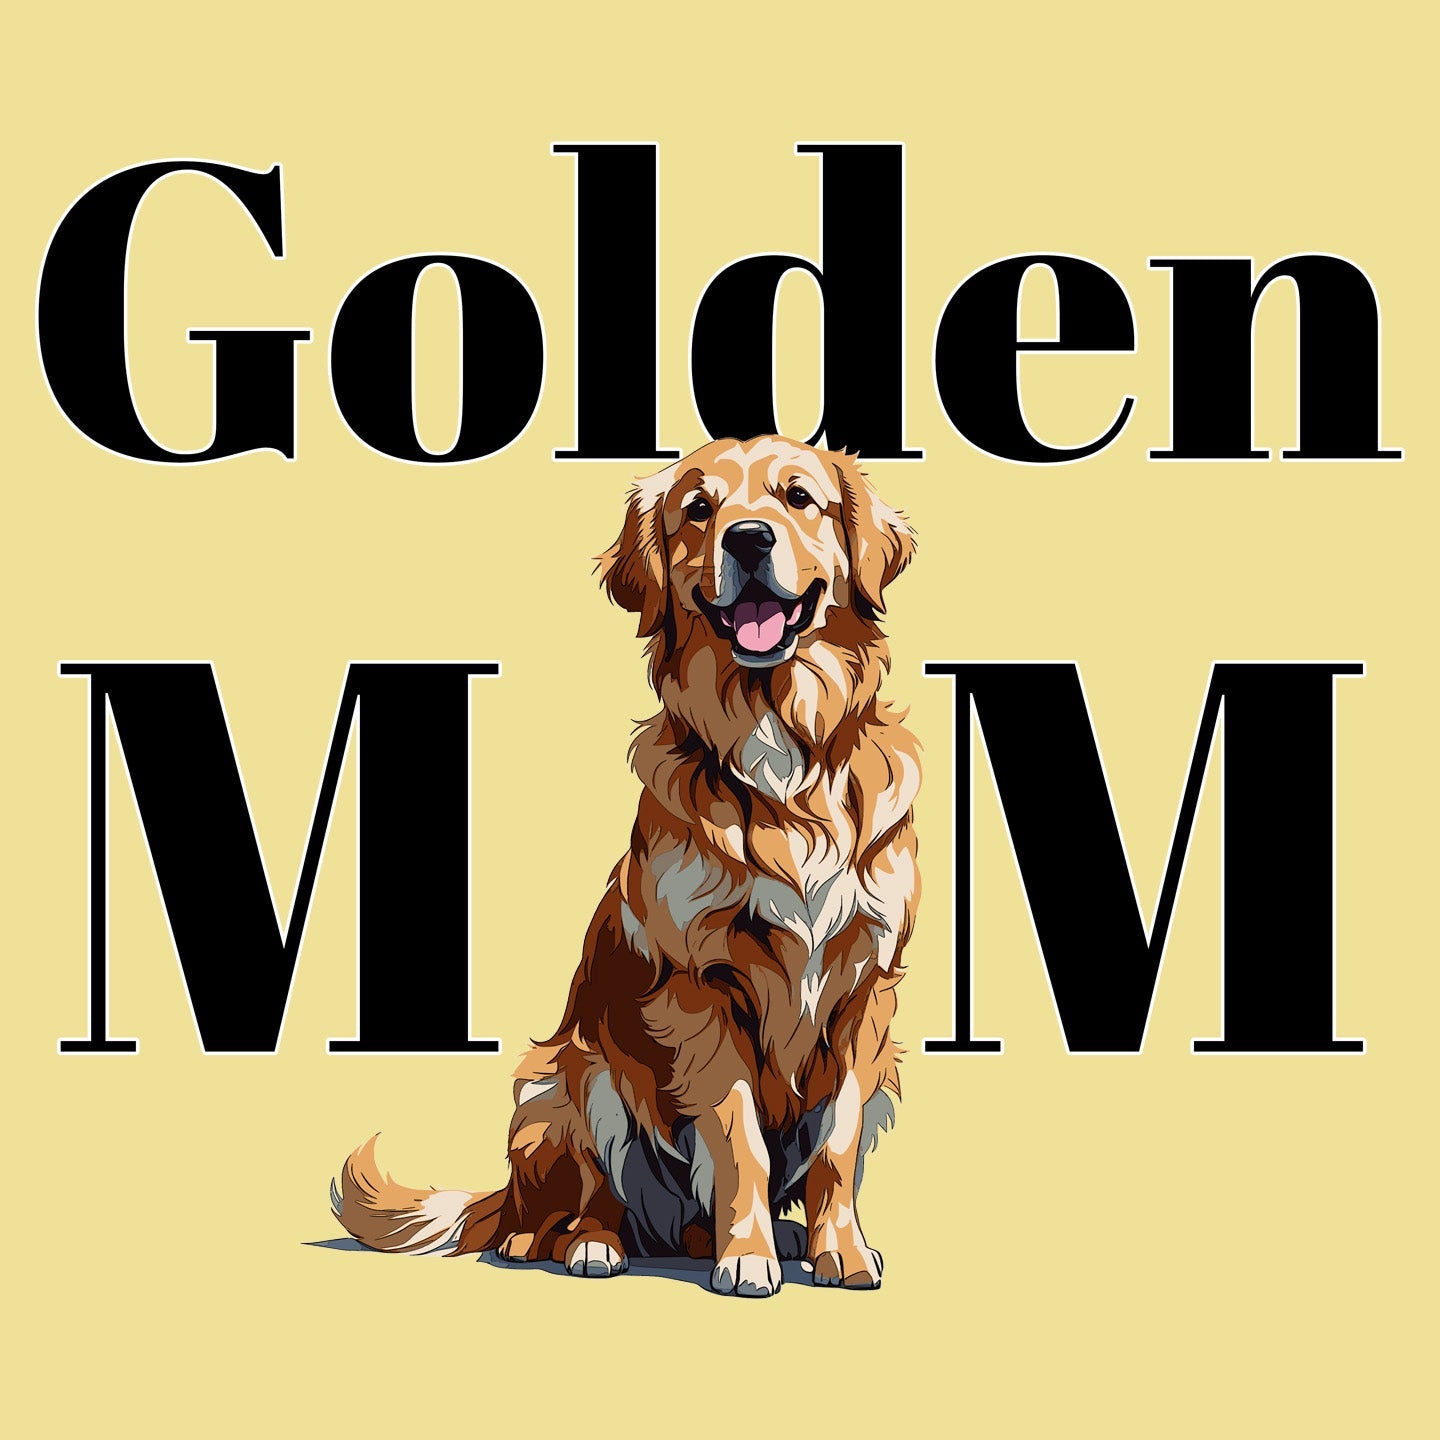 Golden Mom Illustration - Women's Fitted T-Shirt